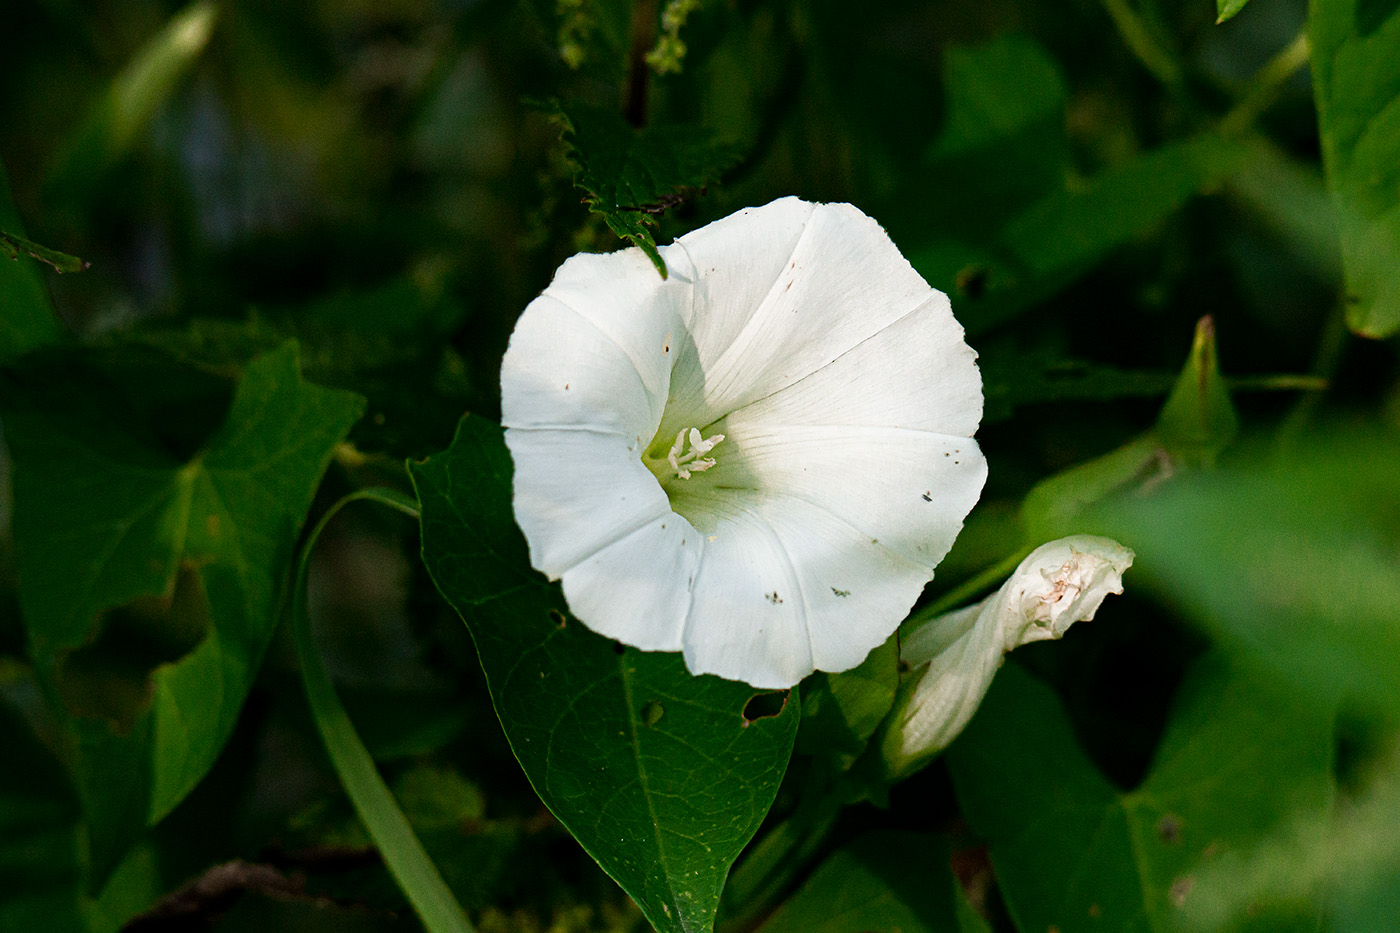 Eine geöffnete und eine geschlossene Blüte der Pflanze Ipomoea alba.